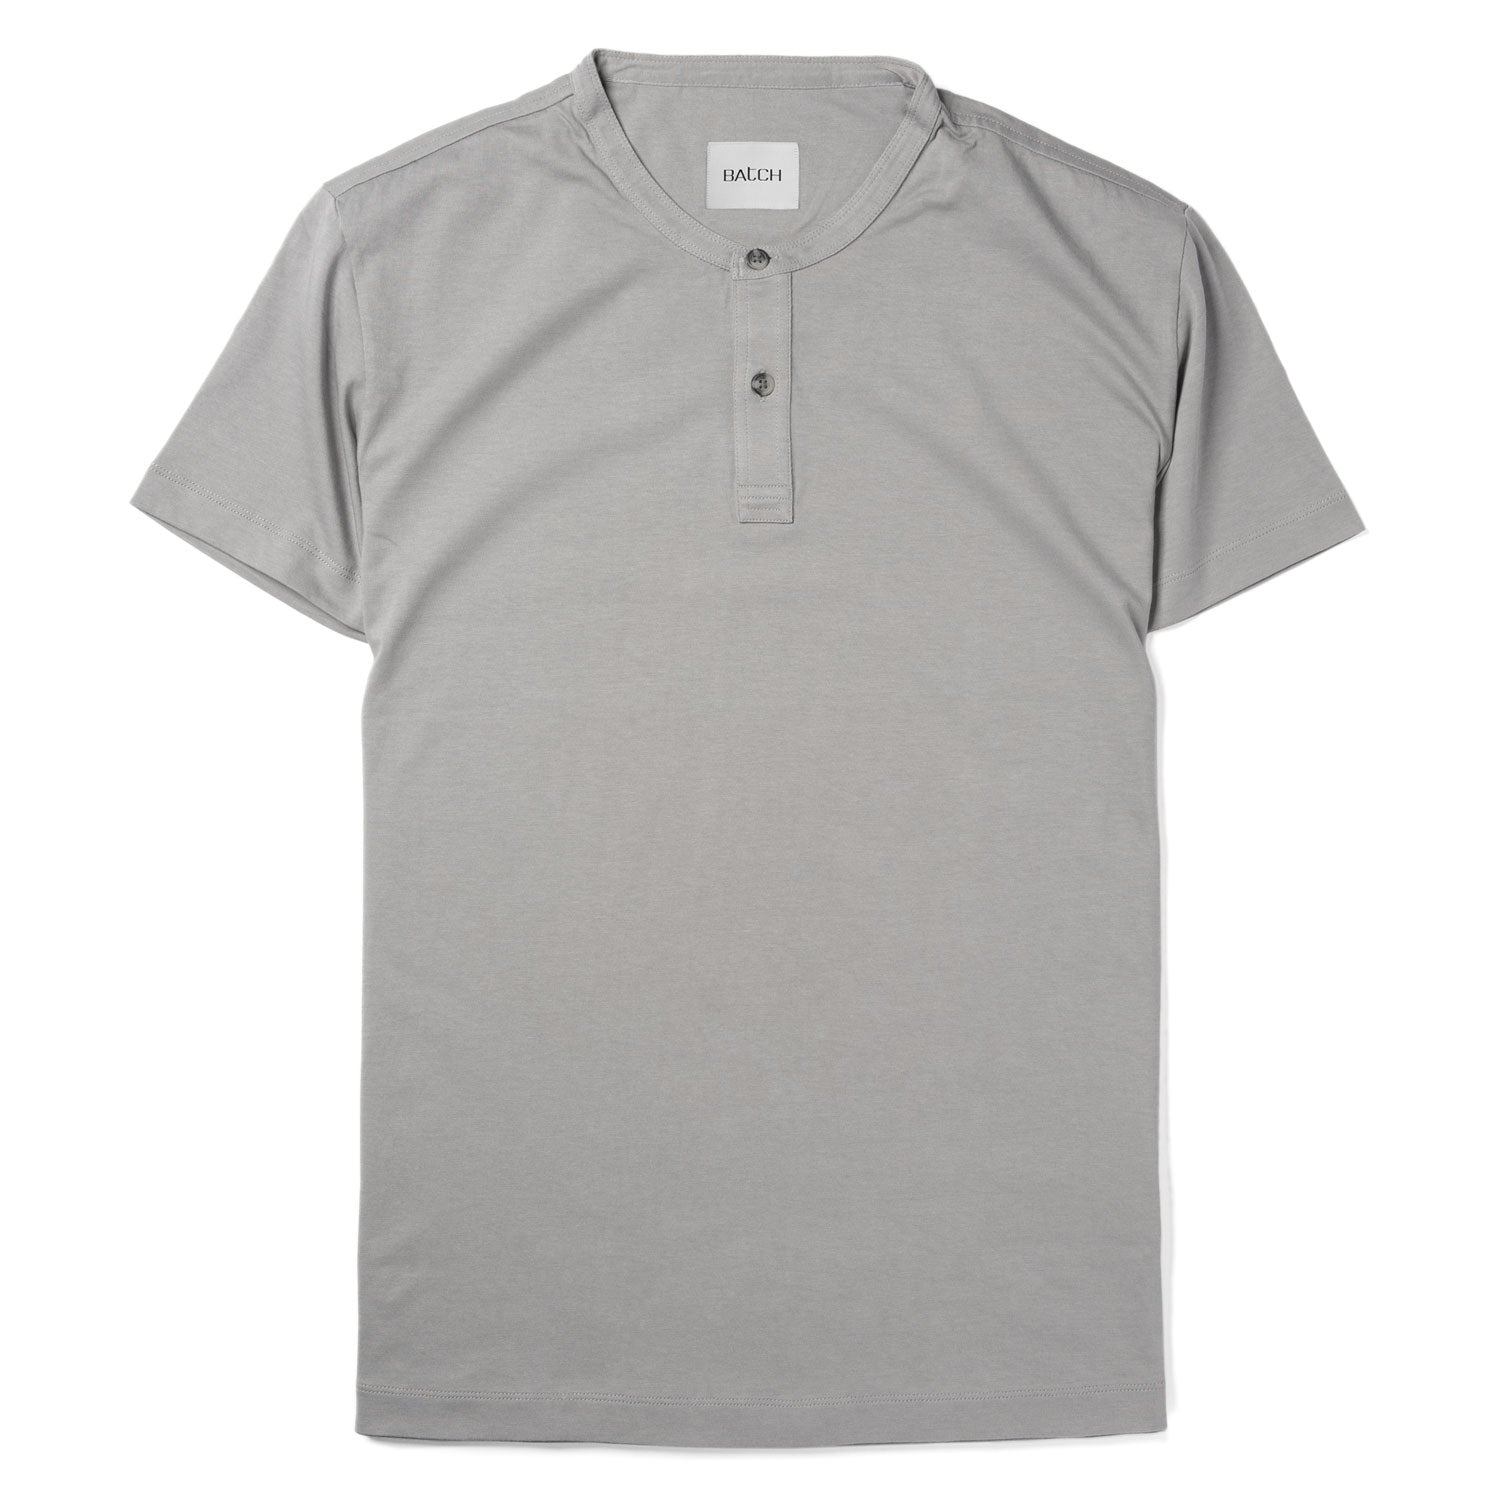 Essential Short Sleeve Henley Shirt –  Cement Gray Cotton Jersey